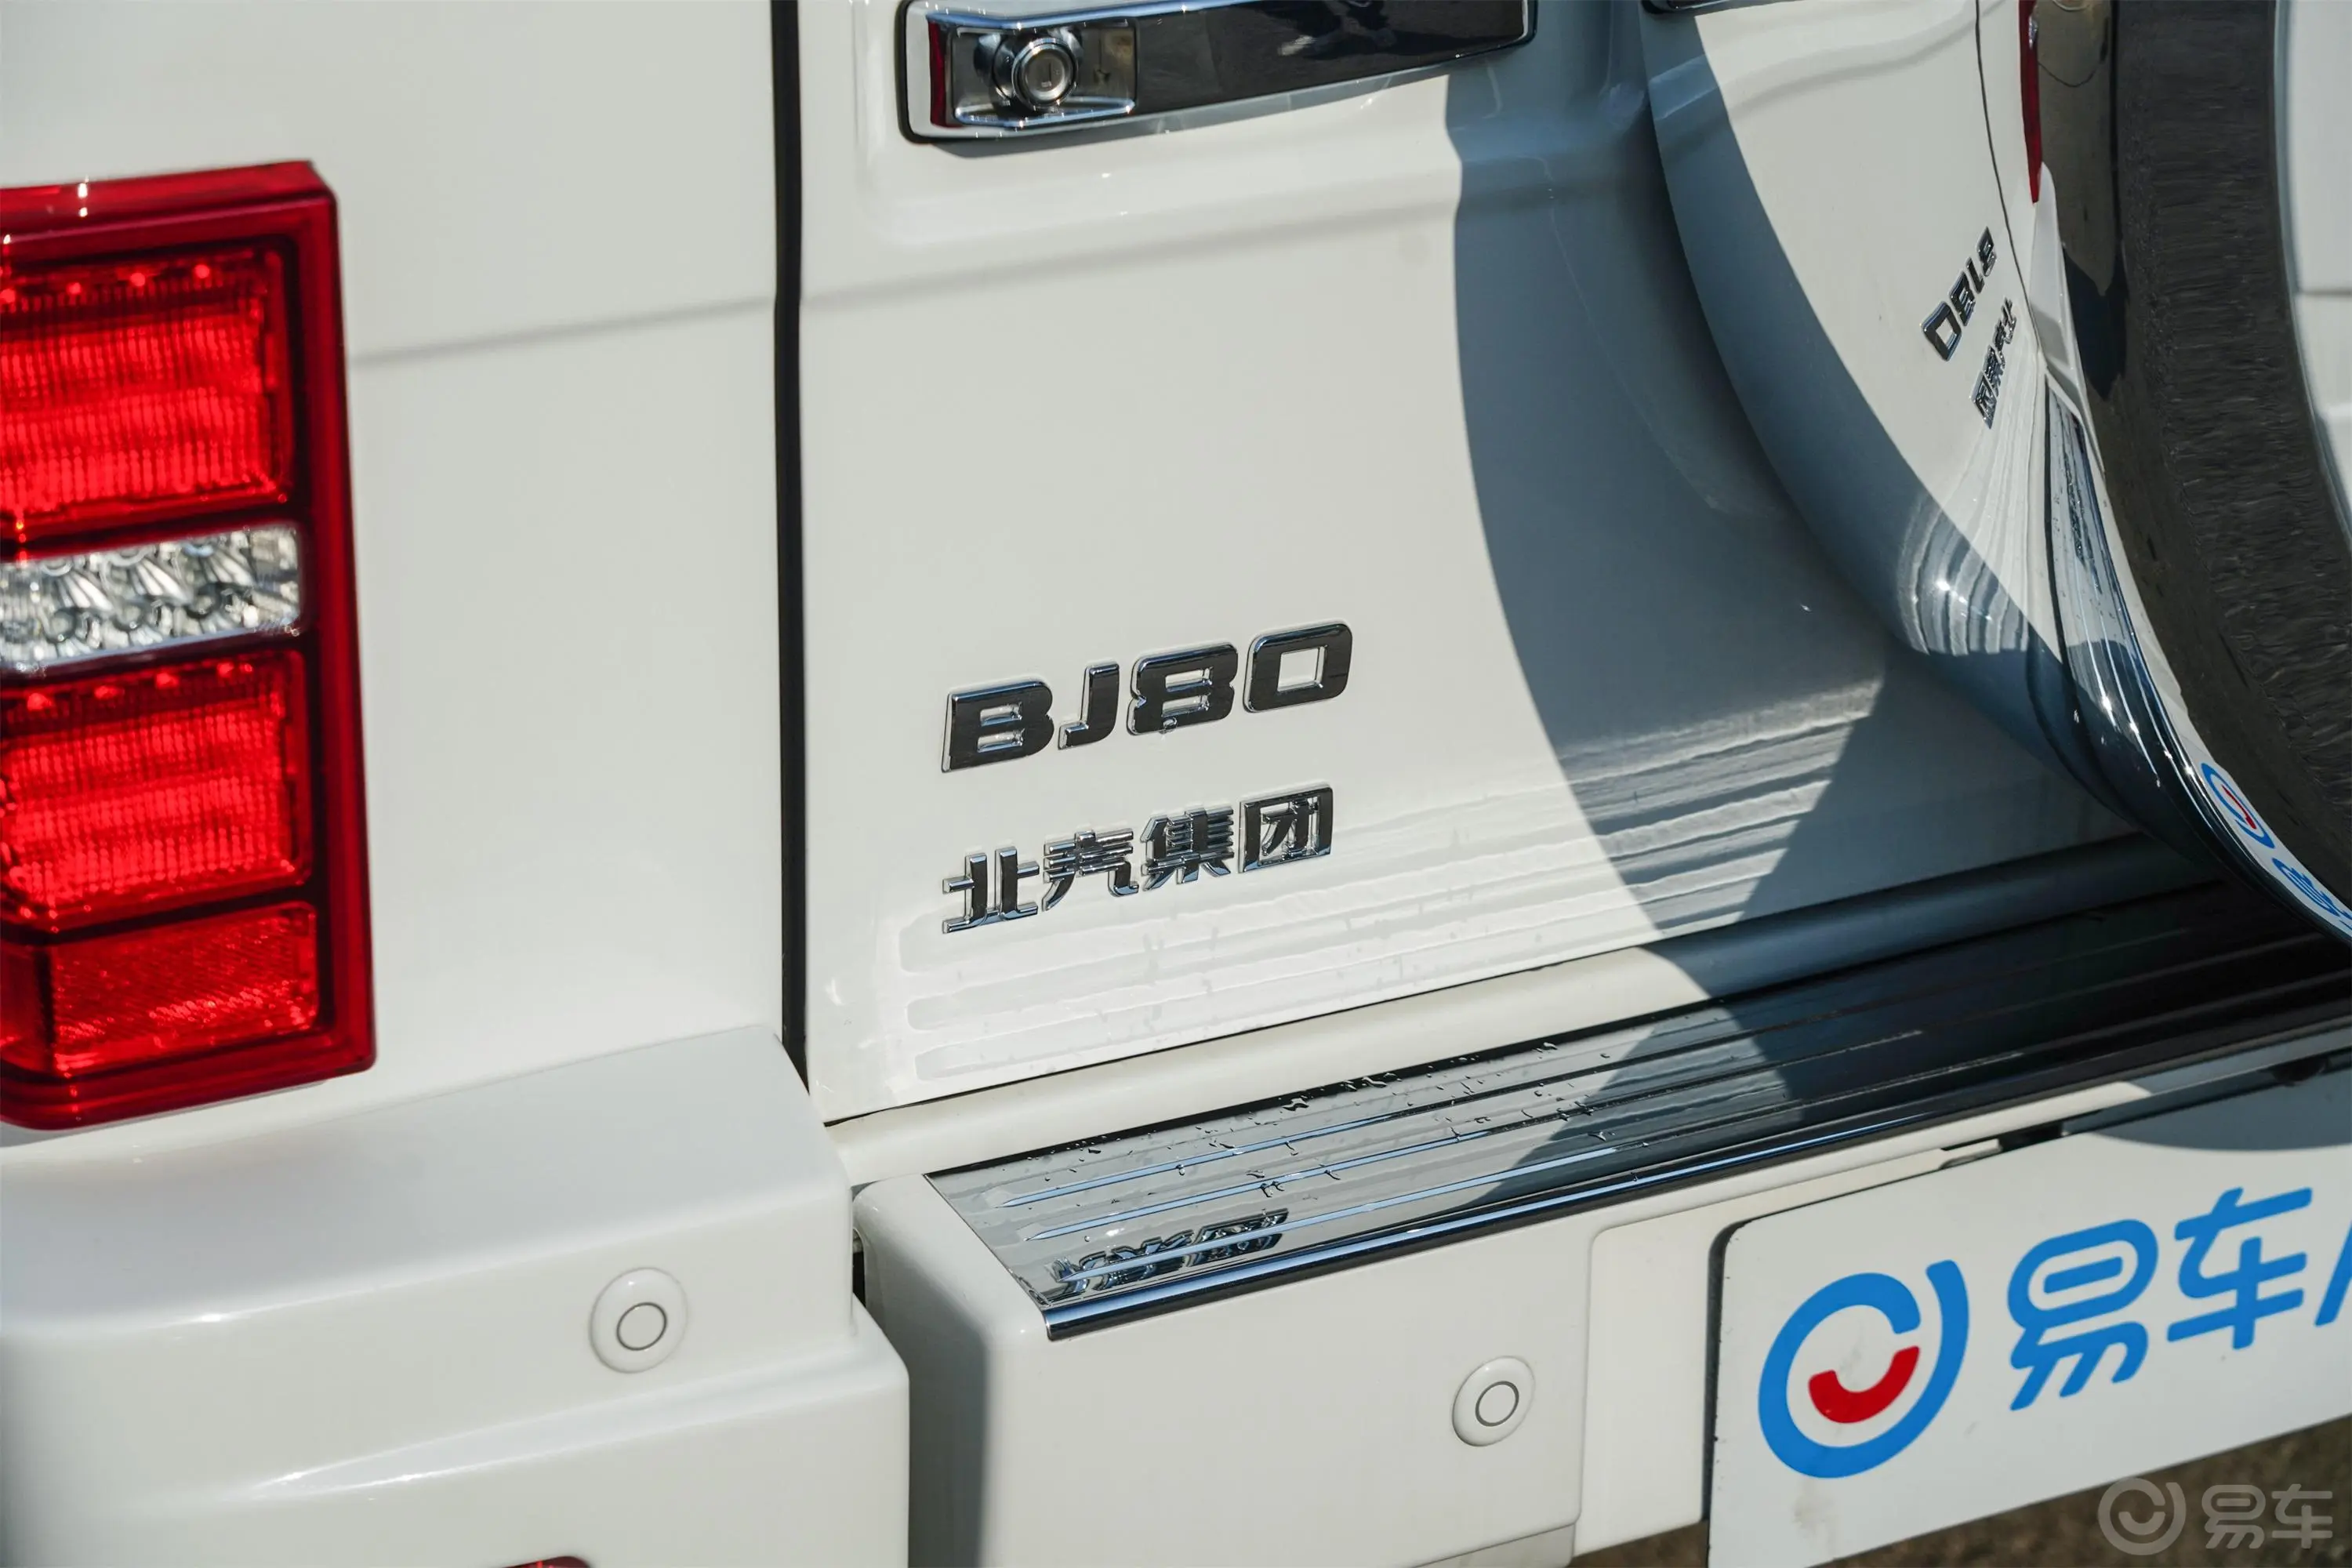 北京BJ802.3T 侠客版外观细节